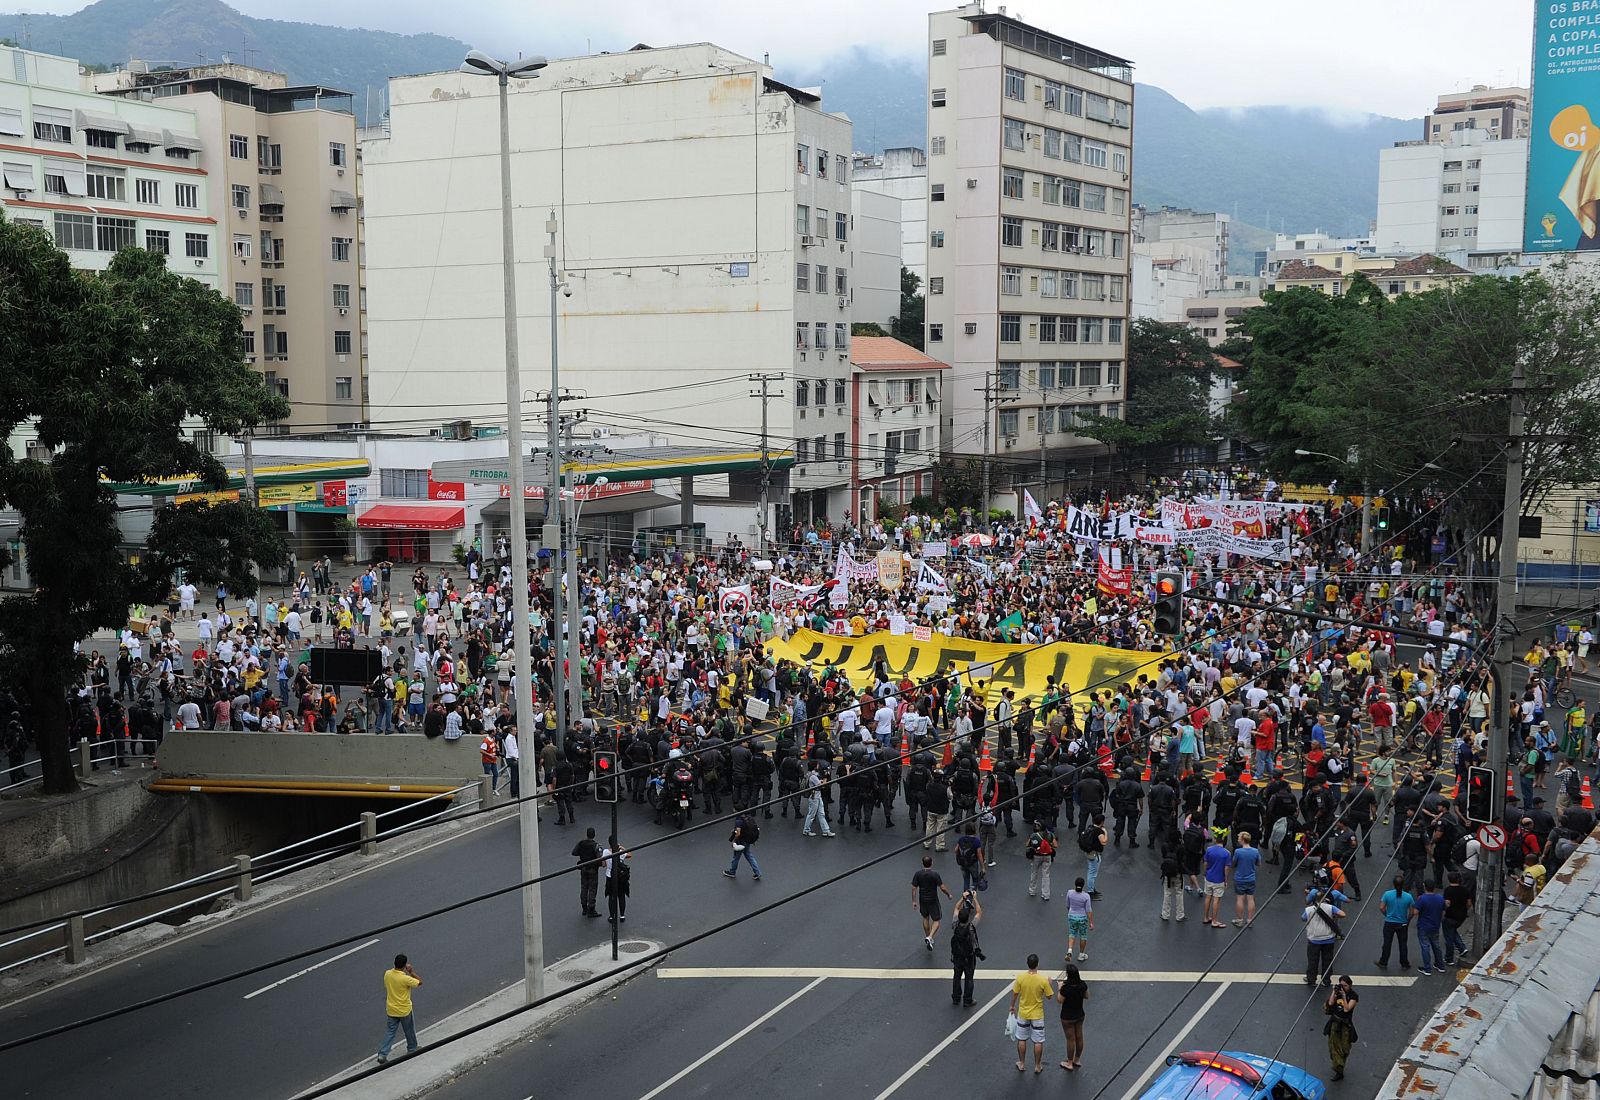 Miles de manifestantes marchan hacia un Maracaná blindado por la policía